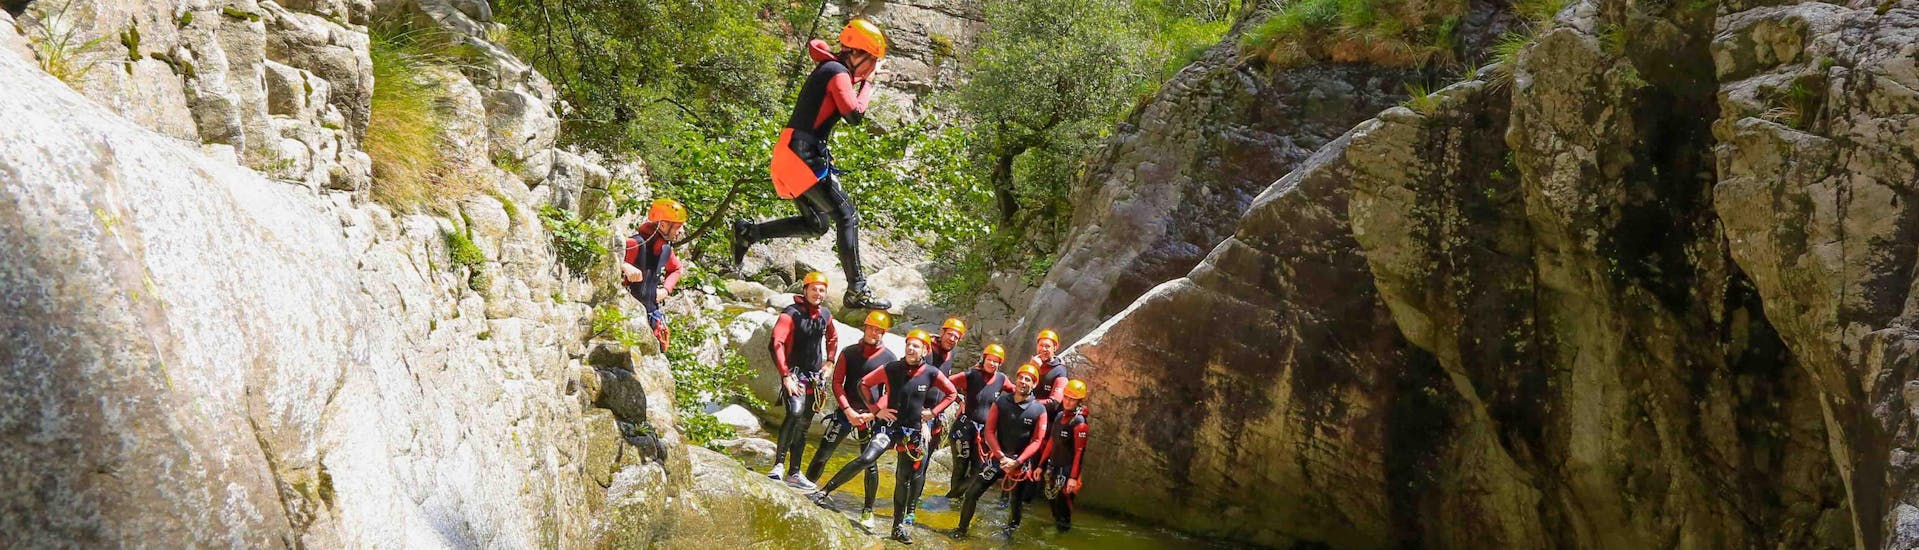 Un touriste saute dans le canyon de Zoicu lors de son activité canyoning Wild avec reves de cimes.